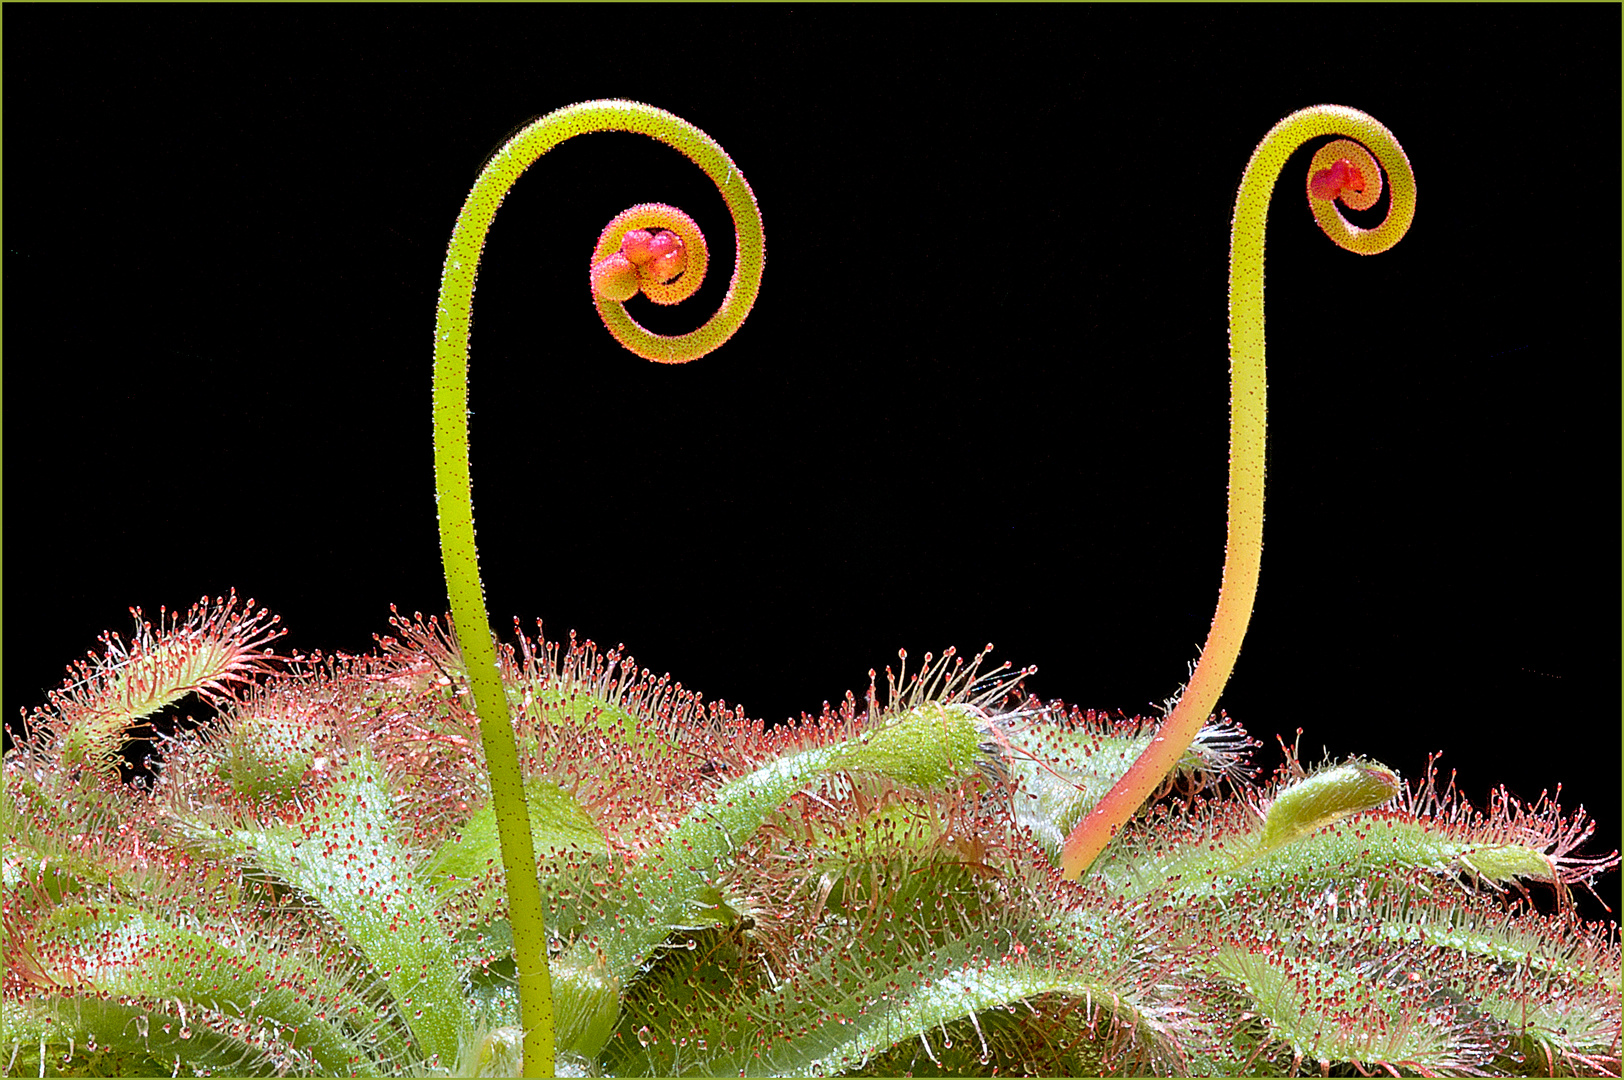 Zwei Blüten des Sonnentaus in ihrer Wachstumsphase